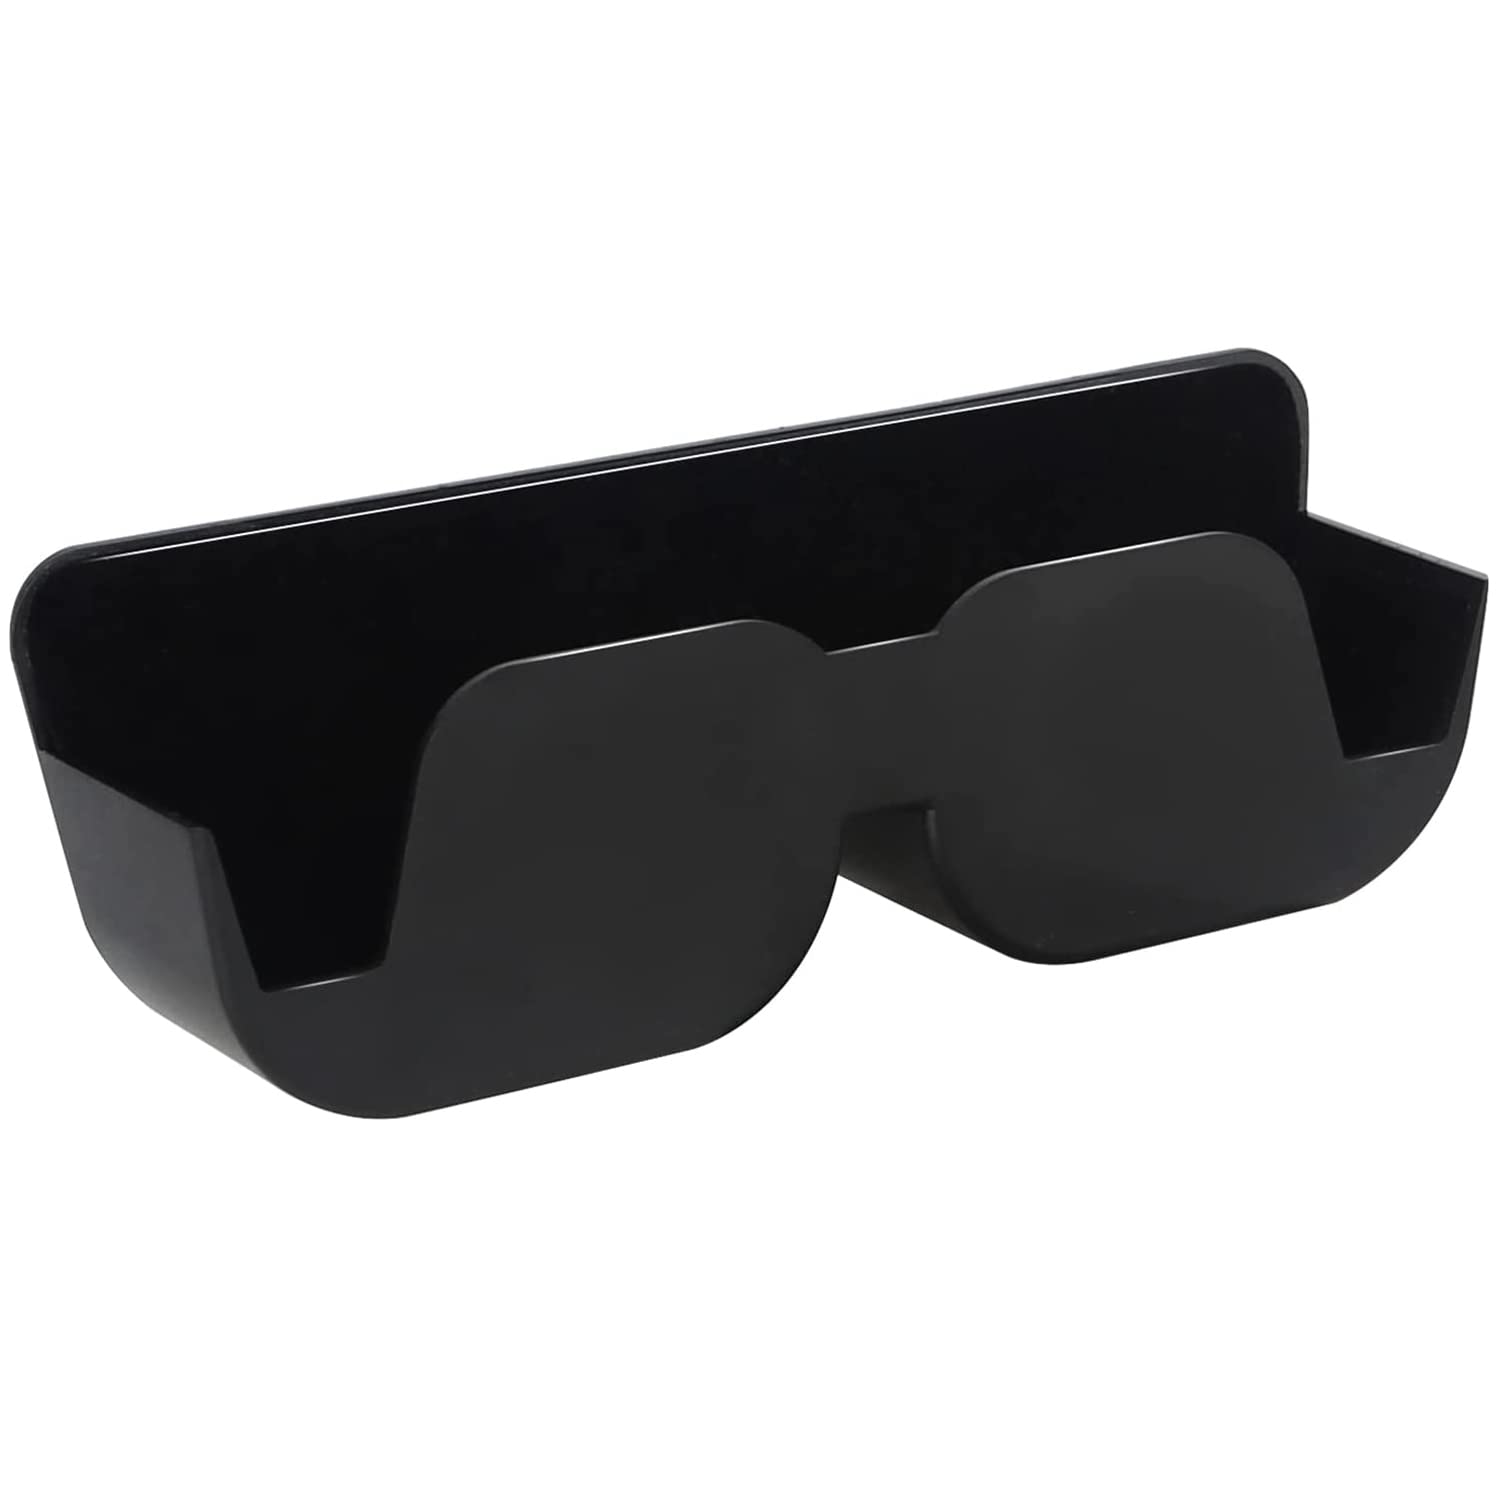 Schwarz Auto Brillenablage,Brillenetui Auto Sonnenbrillen,KFZ Sonnenbrillen Aufbewahrung Halterung selbstklebend mit Filzpolsterung für Brillen im Auto Brillenetui Ablagebox (162 mm x 55 mm x 35 mm) von HomeDejavu